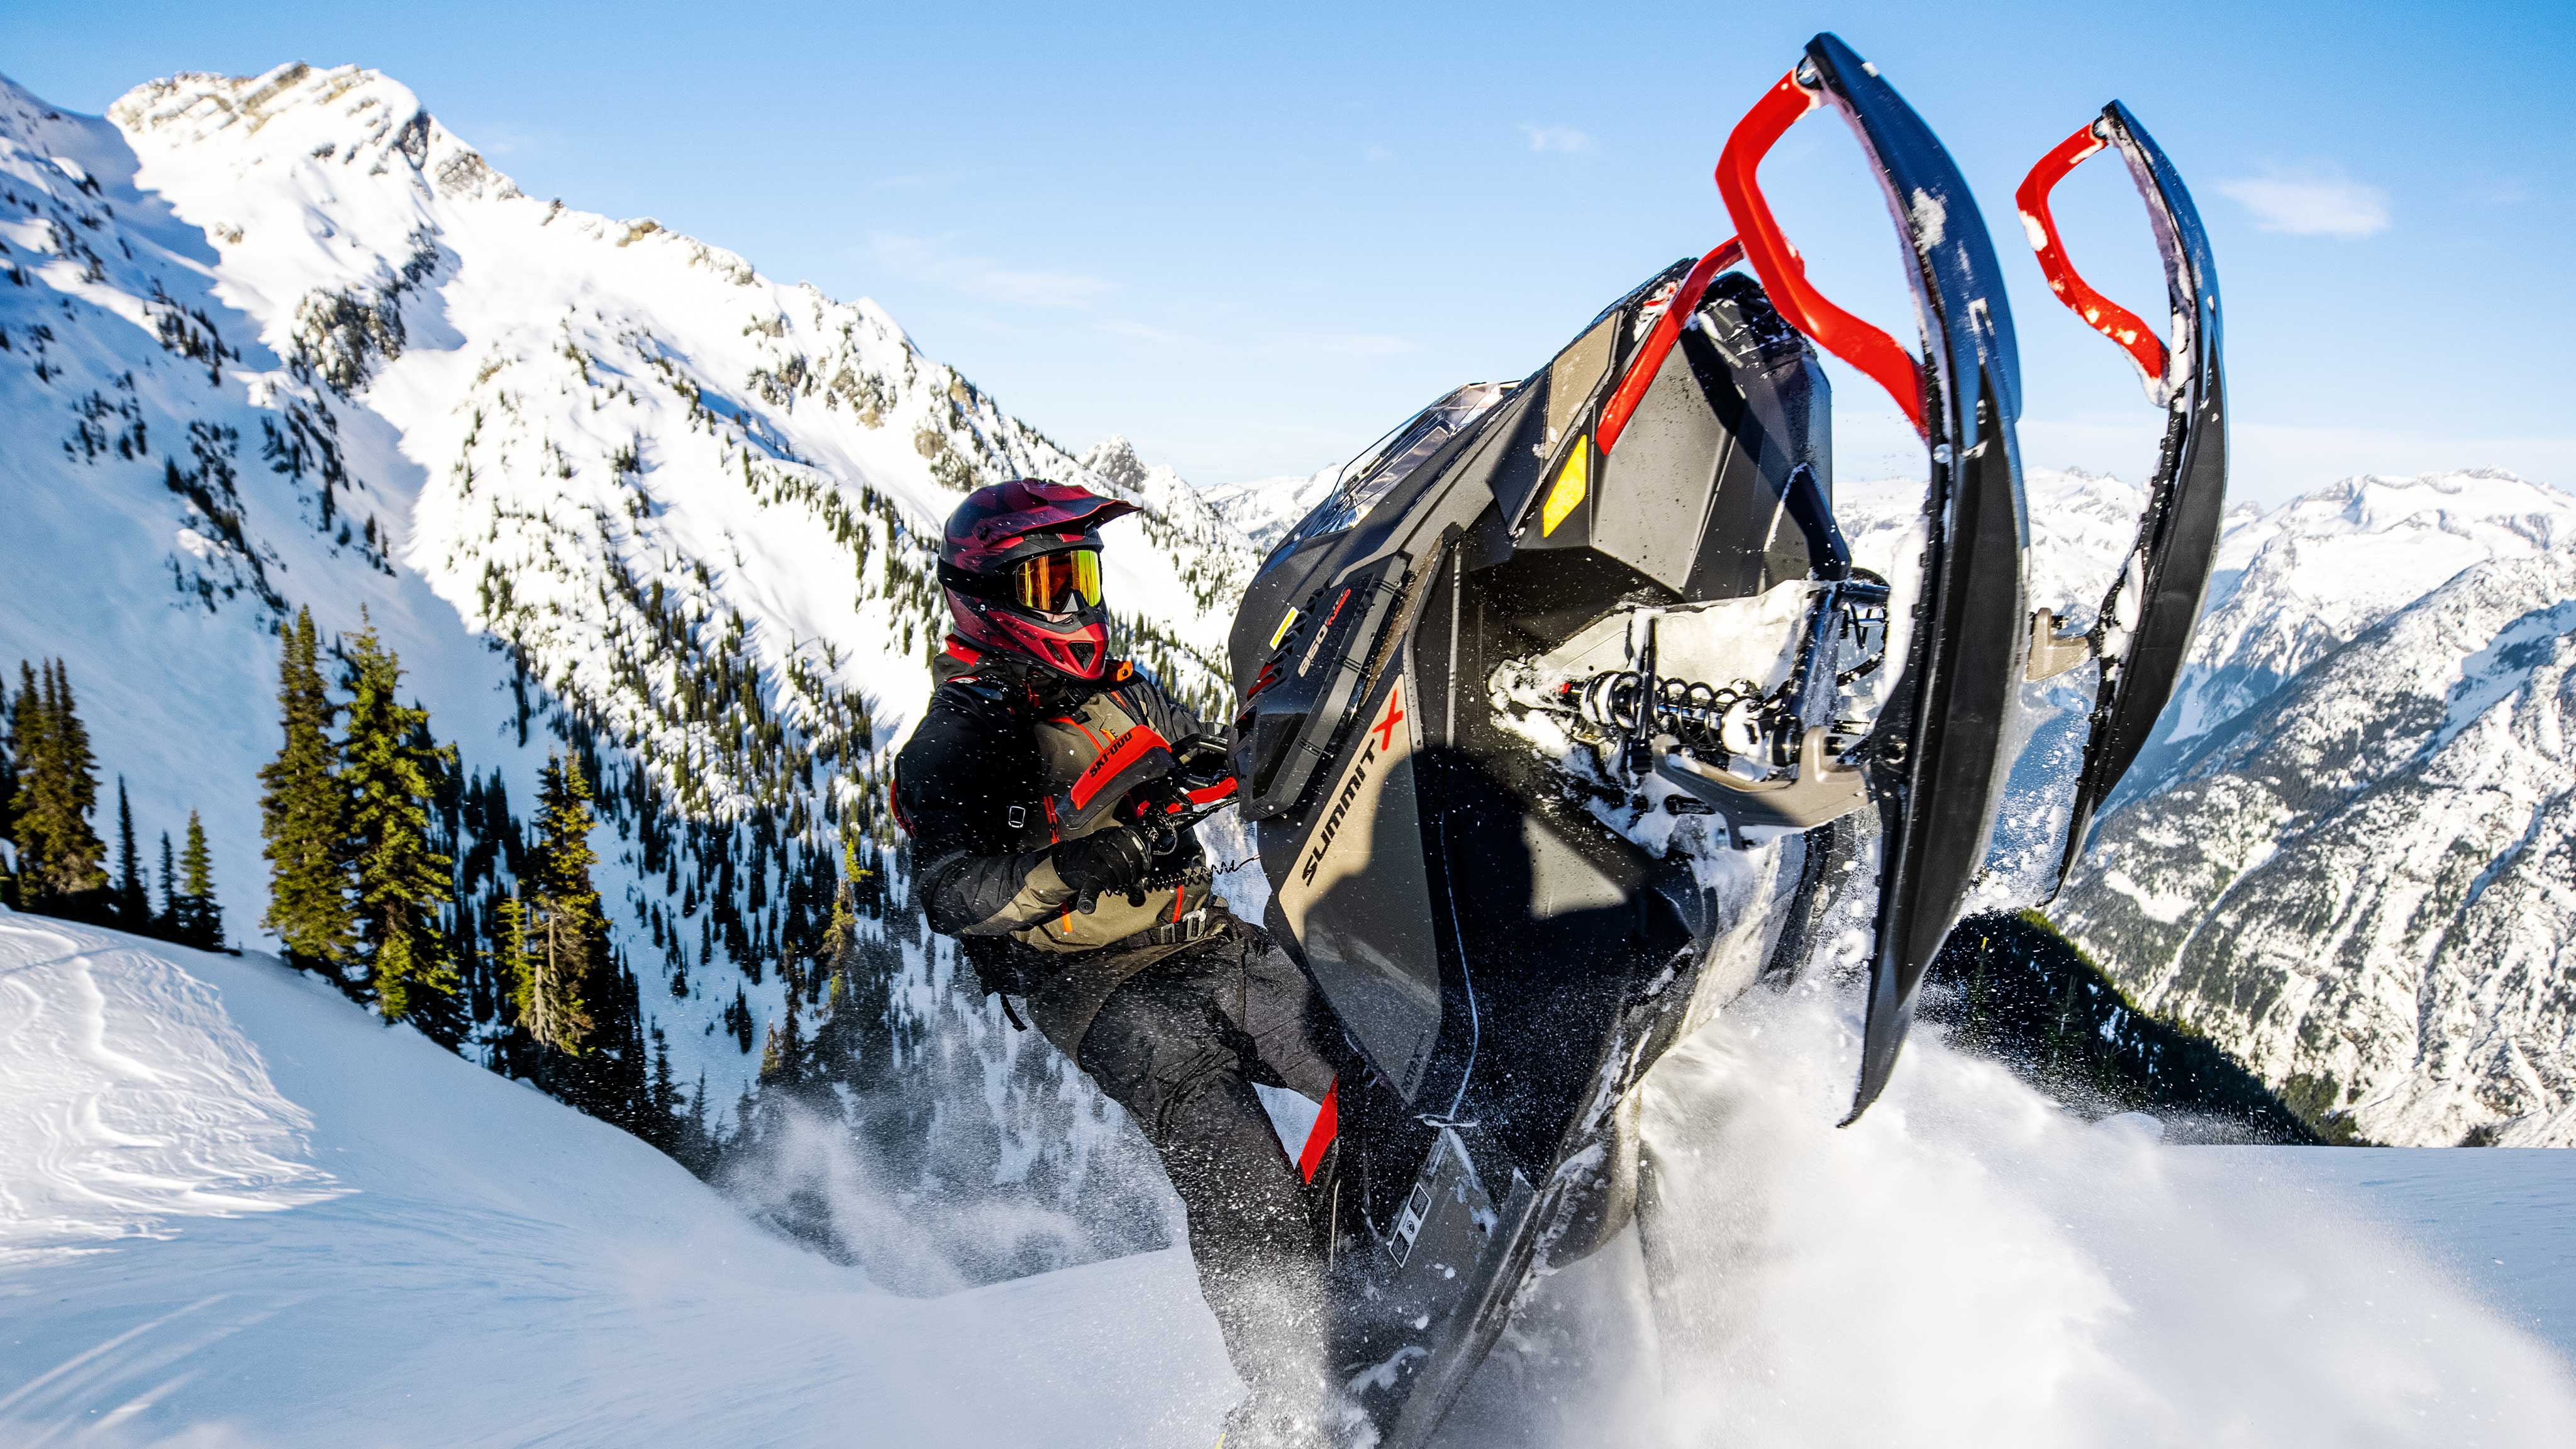 2022 Ski-Doo Backcountry'nin tadını çıkaran 3 sürücü